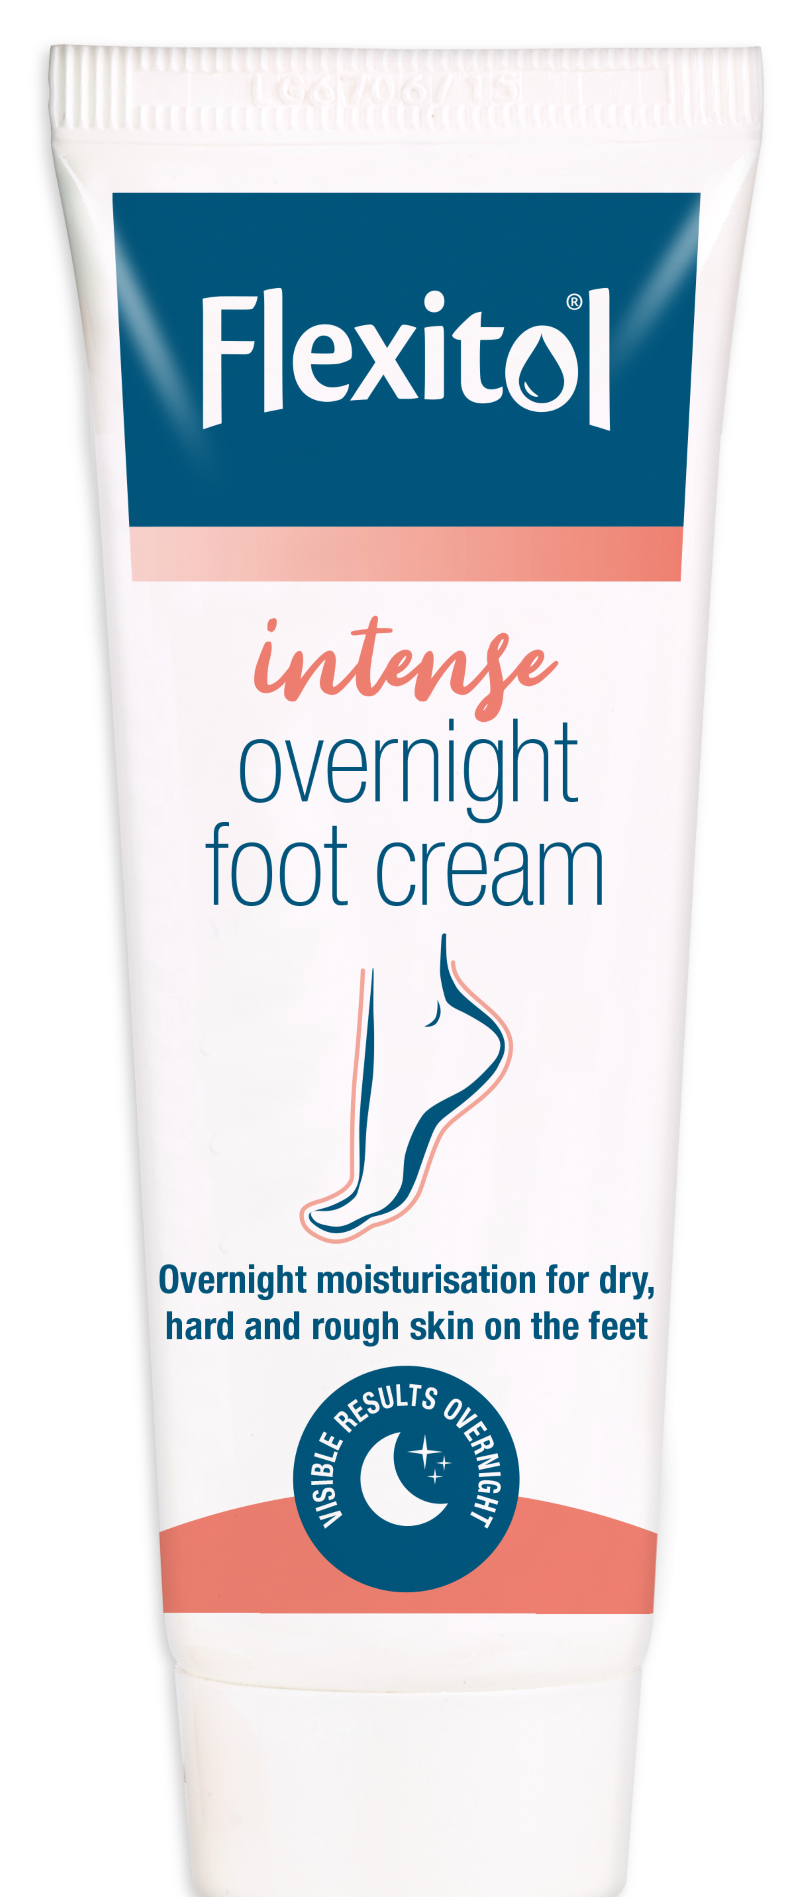 Footcare cream